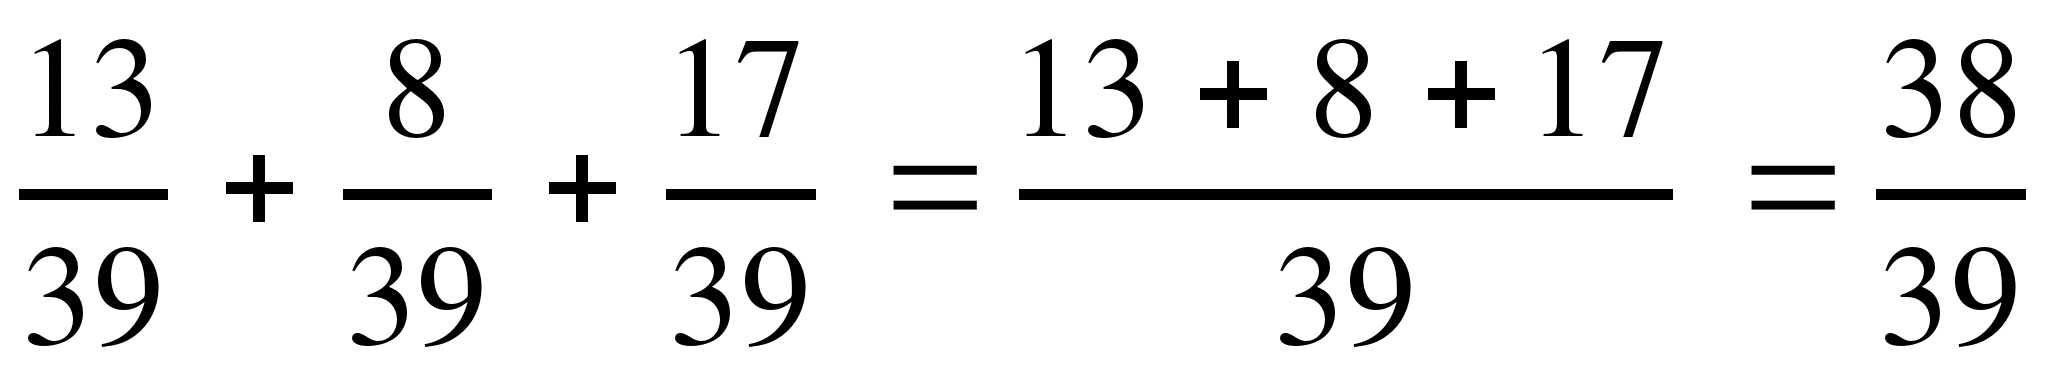 Конспект урока по математике на тему Законы сложения 2 (5 класс)